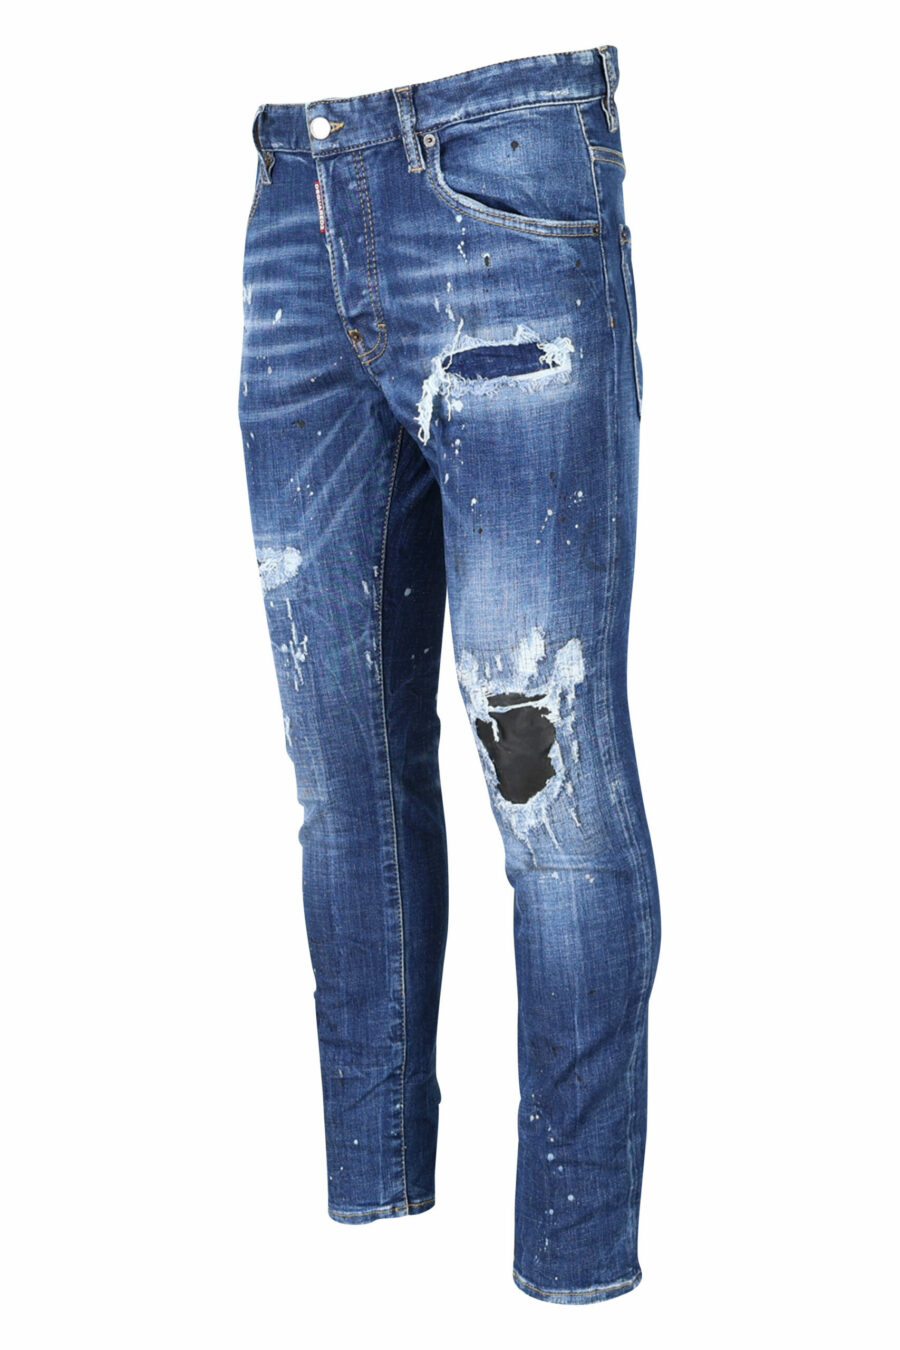 Jeans "super twinkey jean" blau ausgefranst mit schwarz gerissen - 8054148124328 1 skaliert